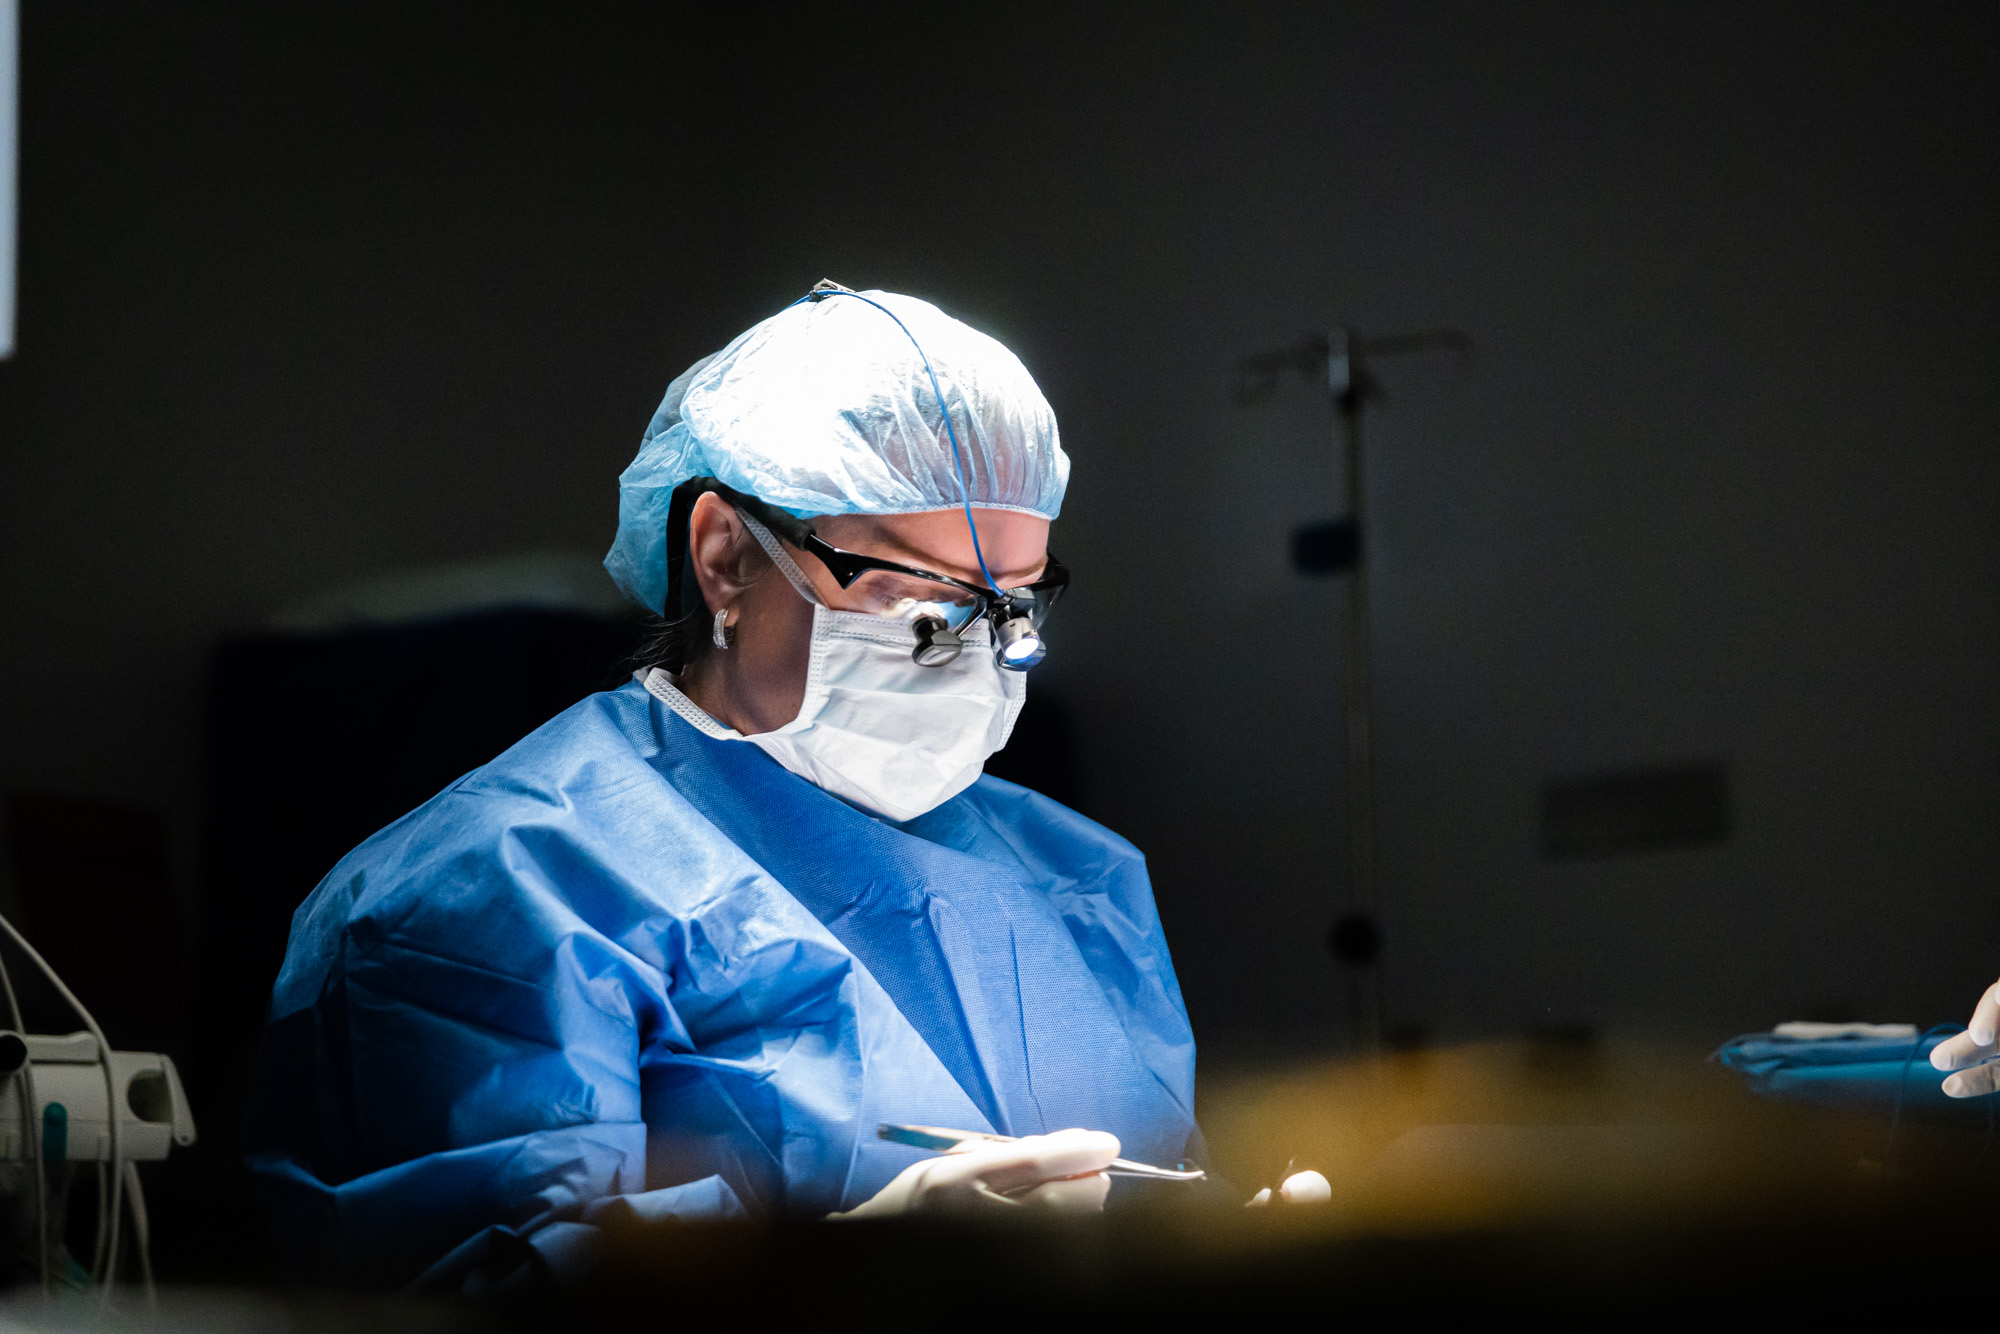 A surgeon focuses on a patient's facial plastic surgery.